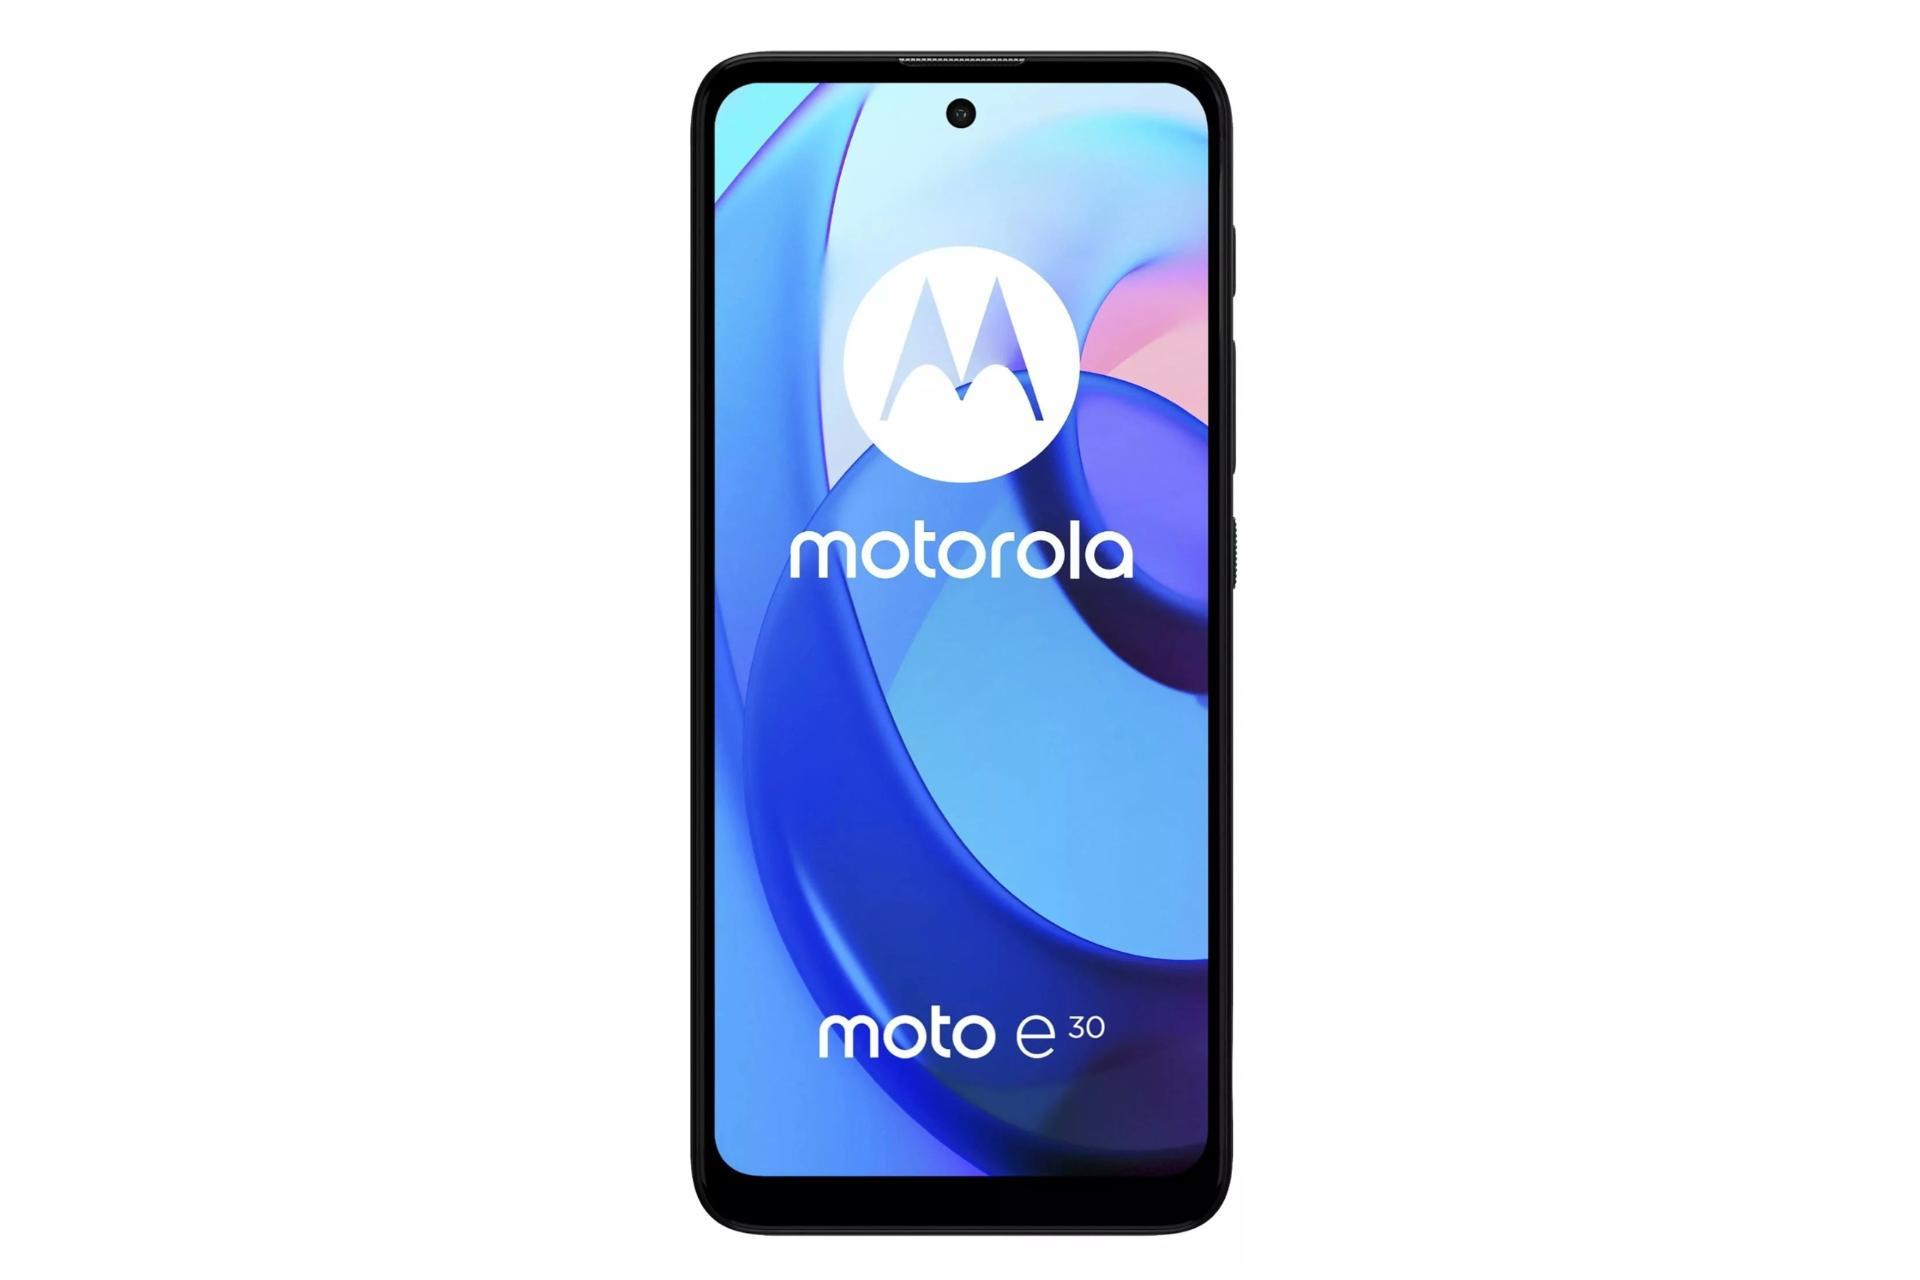 پنل جلو گوشی موبایل موتو ای 30 موتورولا / Motorola Moto E30